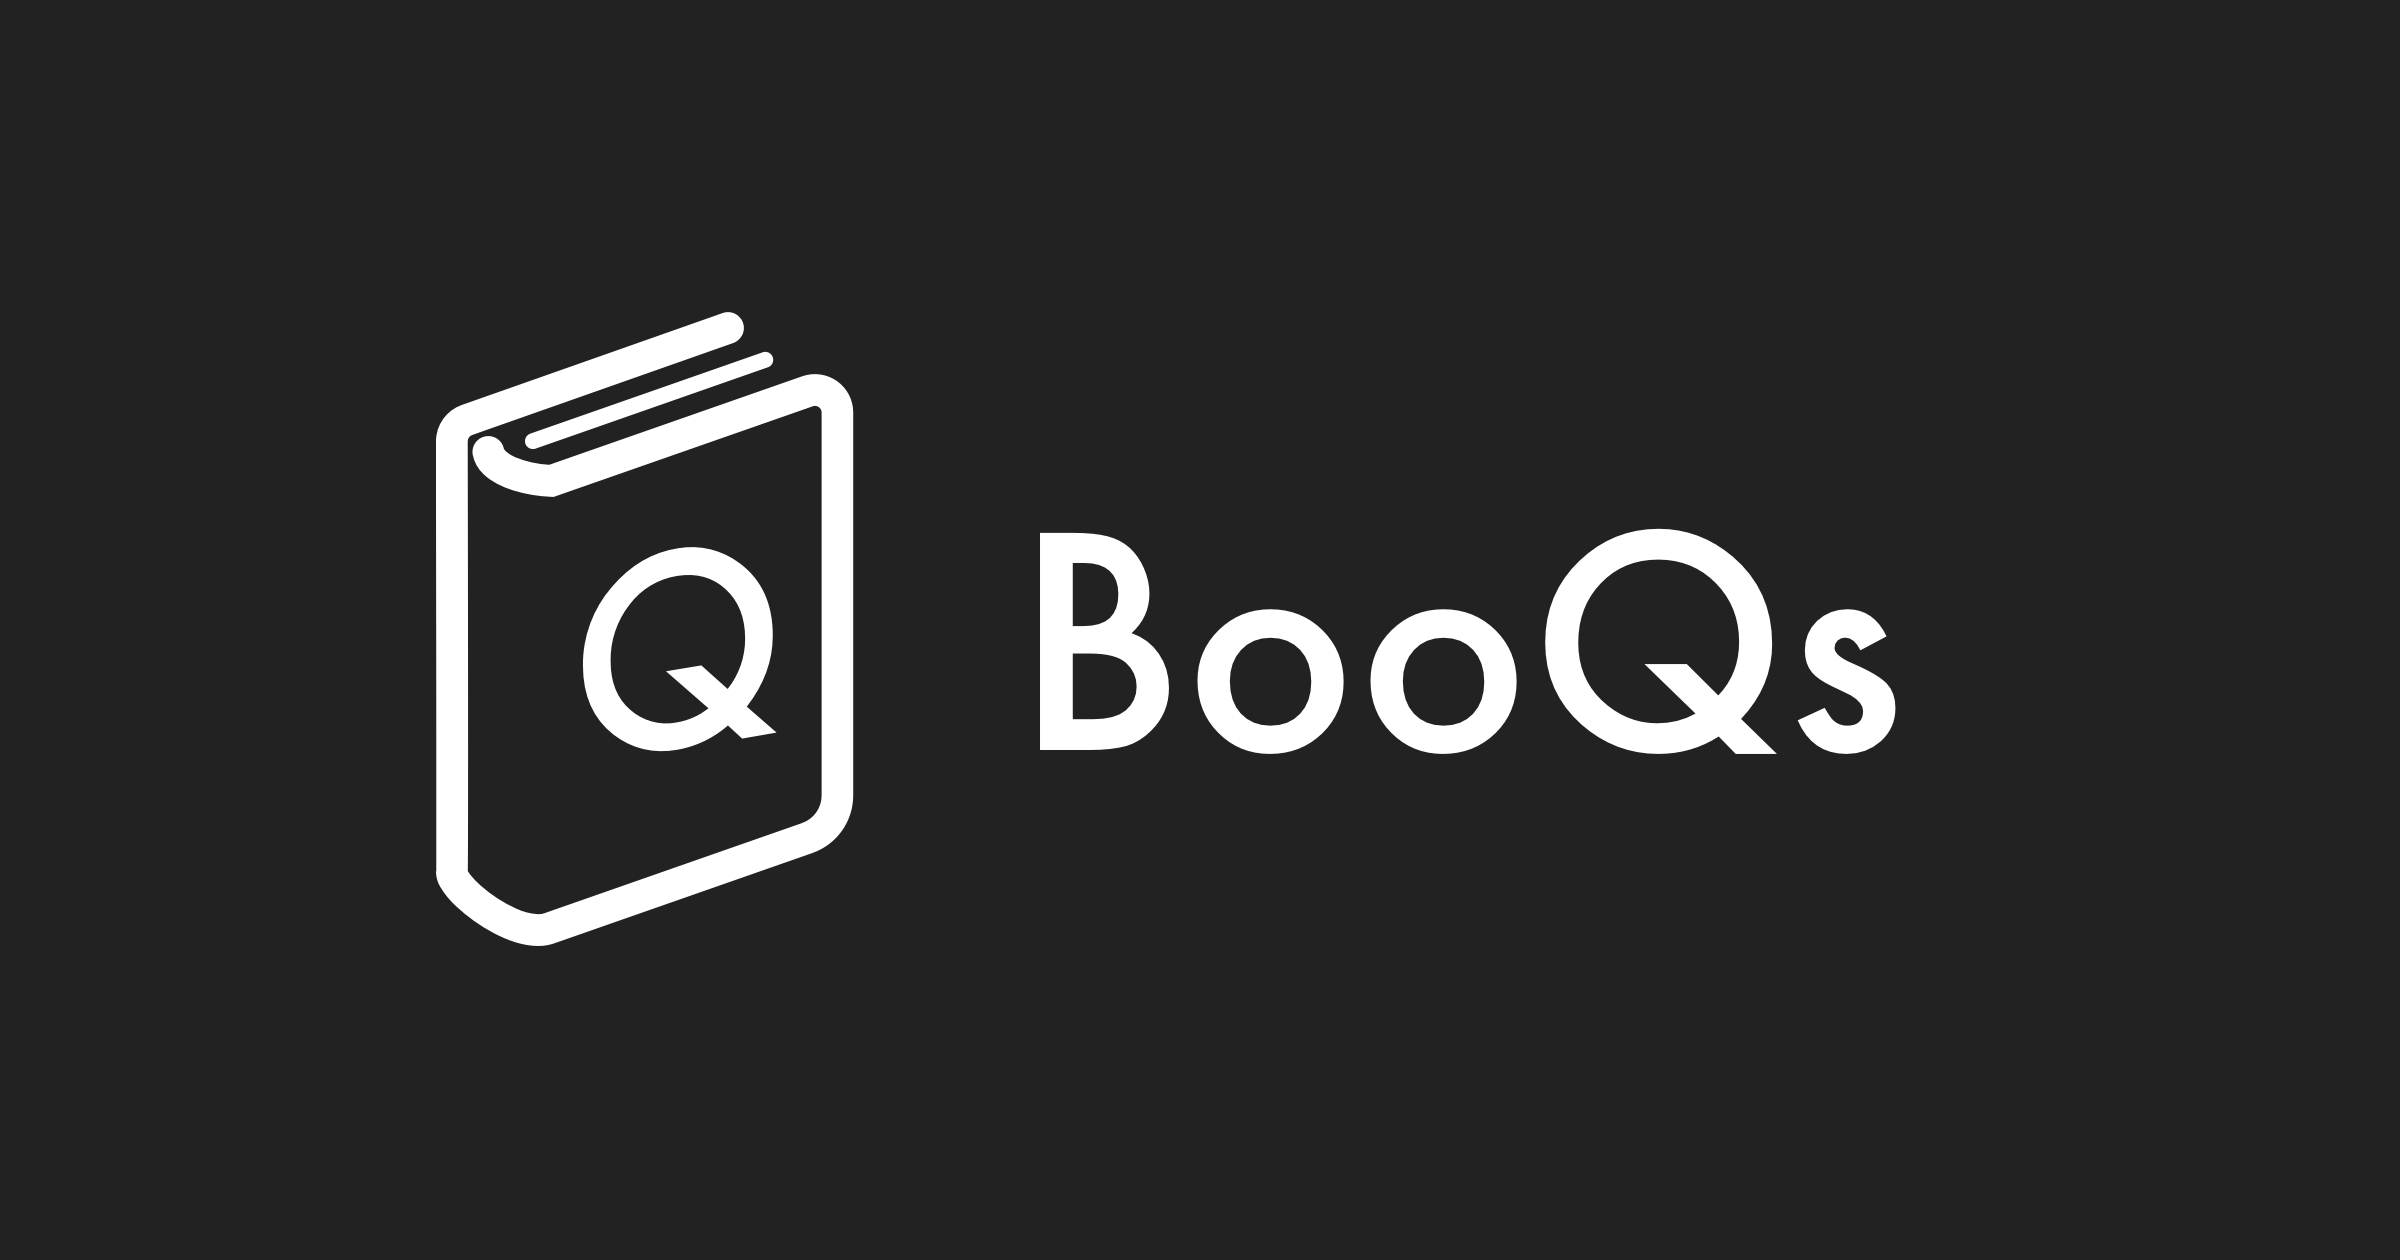 学習の科学に基づいた問題集サービス Booqs が ユーザーによる問題集作成機能の提供を開始 株式会社booqsのプレスリリース